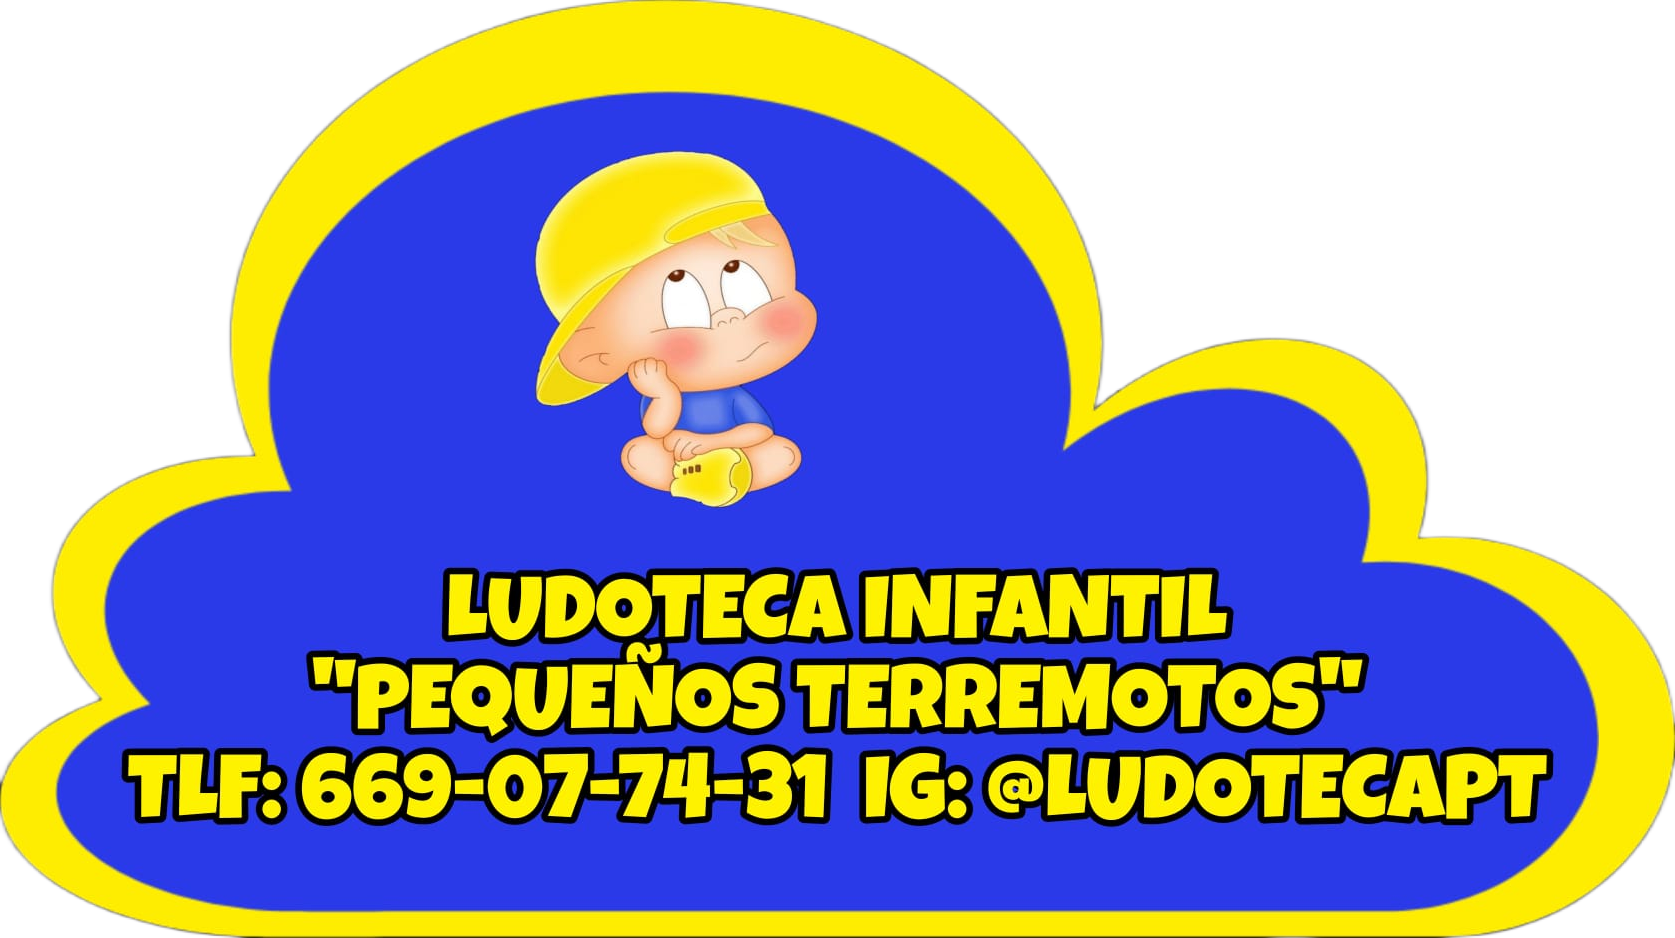 Images Ludoteca Infantil "Pequeños Terremotos"